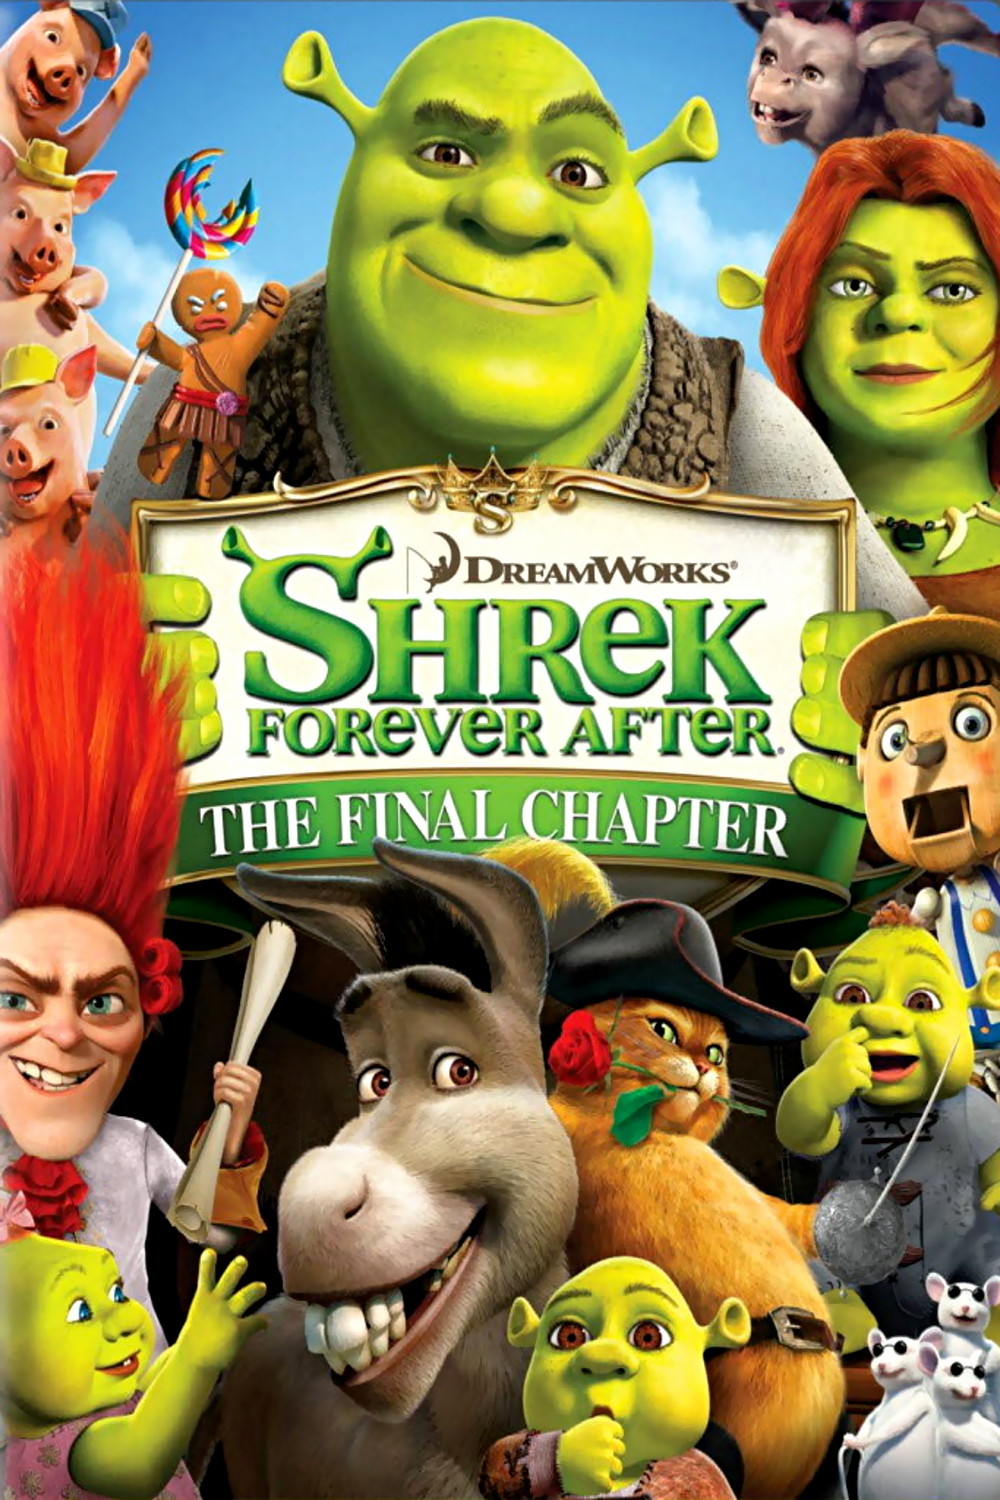 Teoria mais triste de Shrek #shrek #dreamworks #filmes #curiosidades #